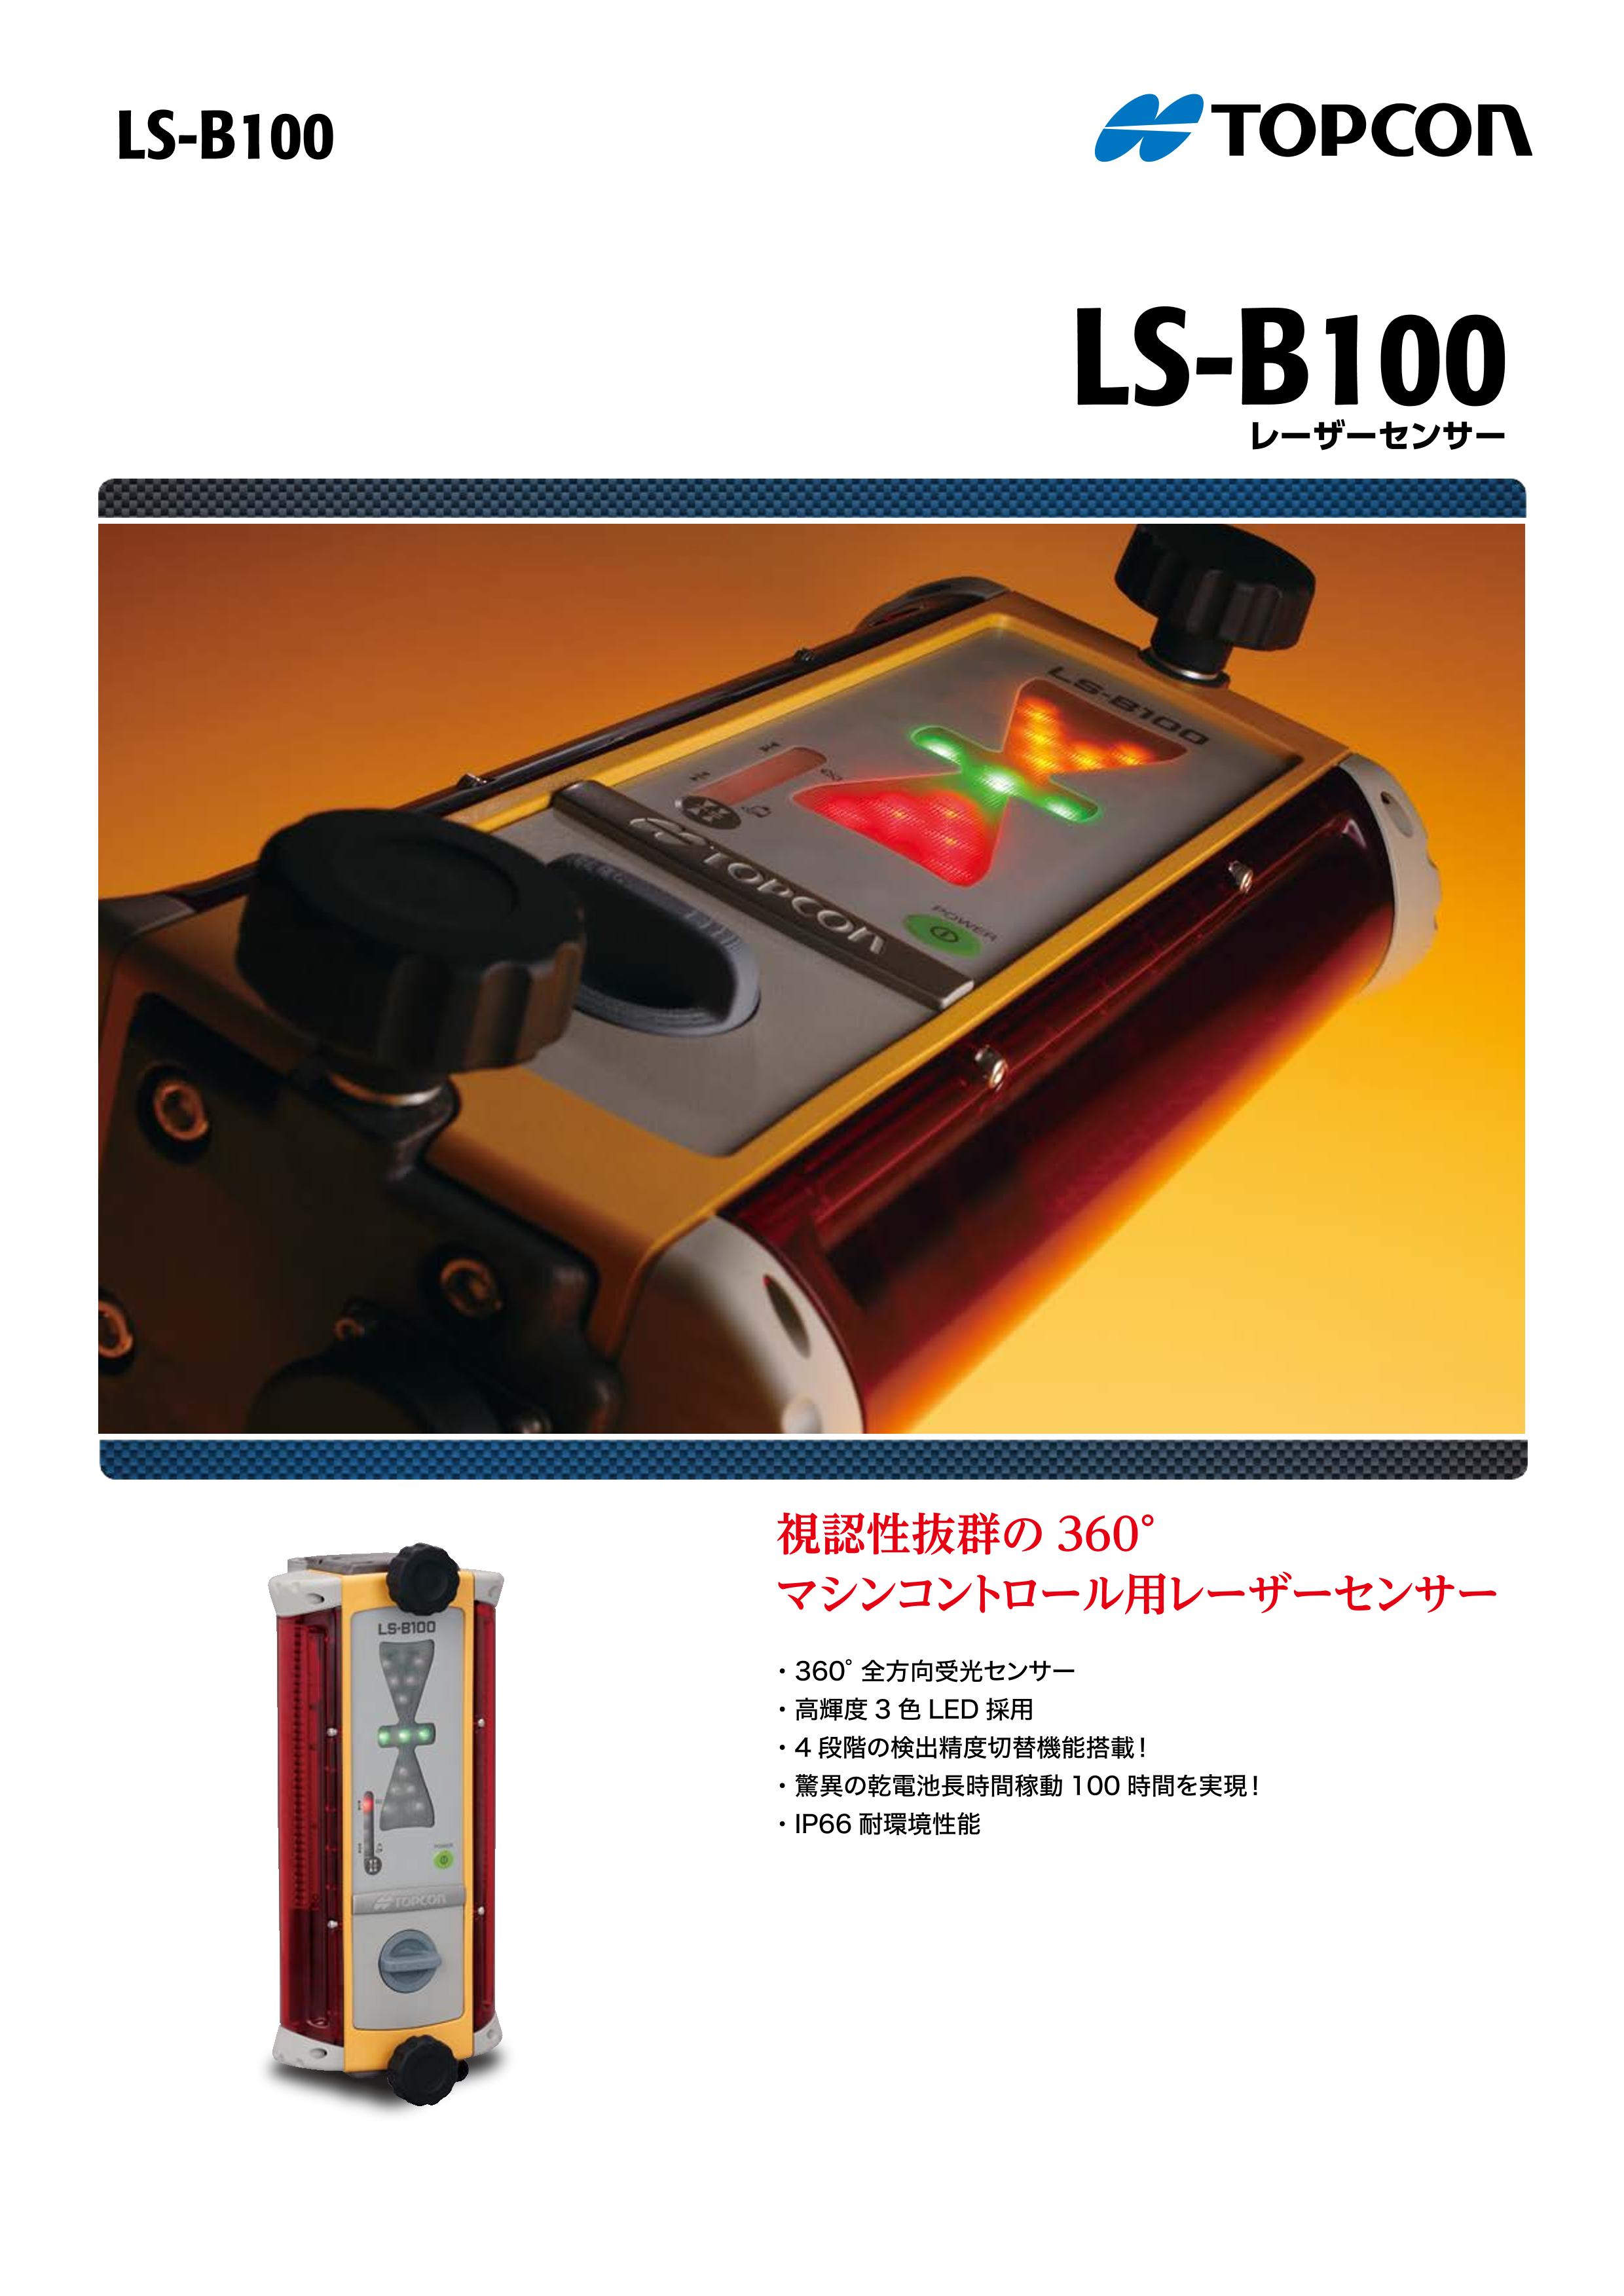 TOPCON レーザーセンサー LS-B100 新でん